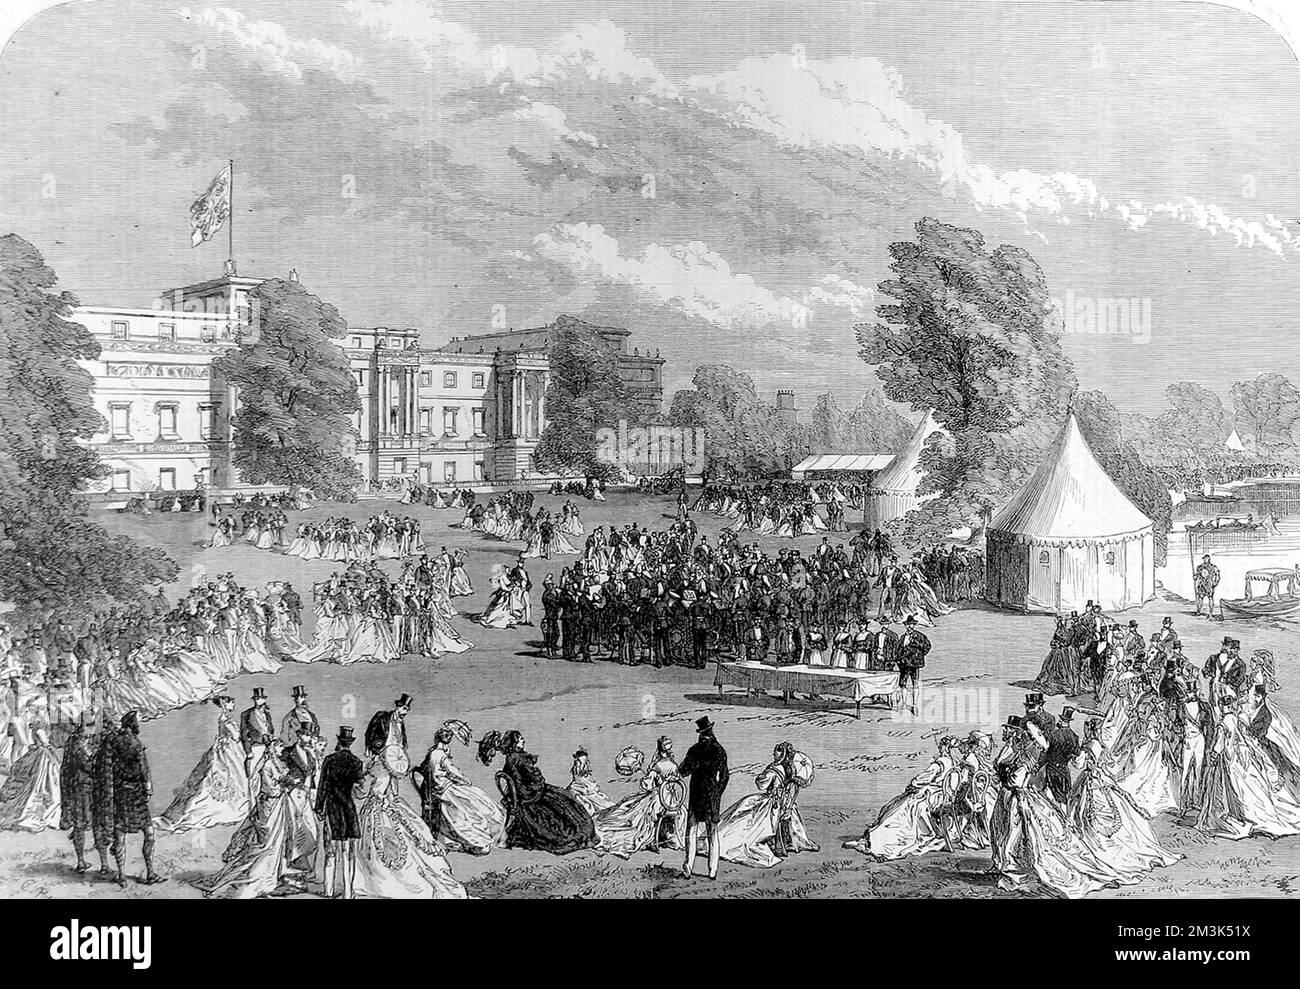 Gravure montrant une fête de jardin, tenue par la reine Victoria, dans le domaine de Buckingham Palace, Londres, en 1868. Date : 4 juillet 1868 Banque D'Images